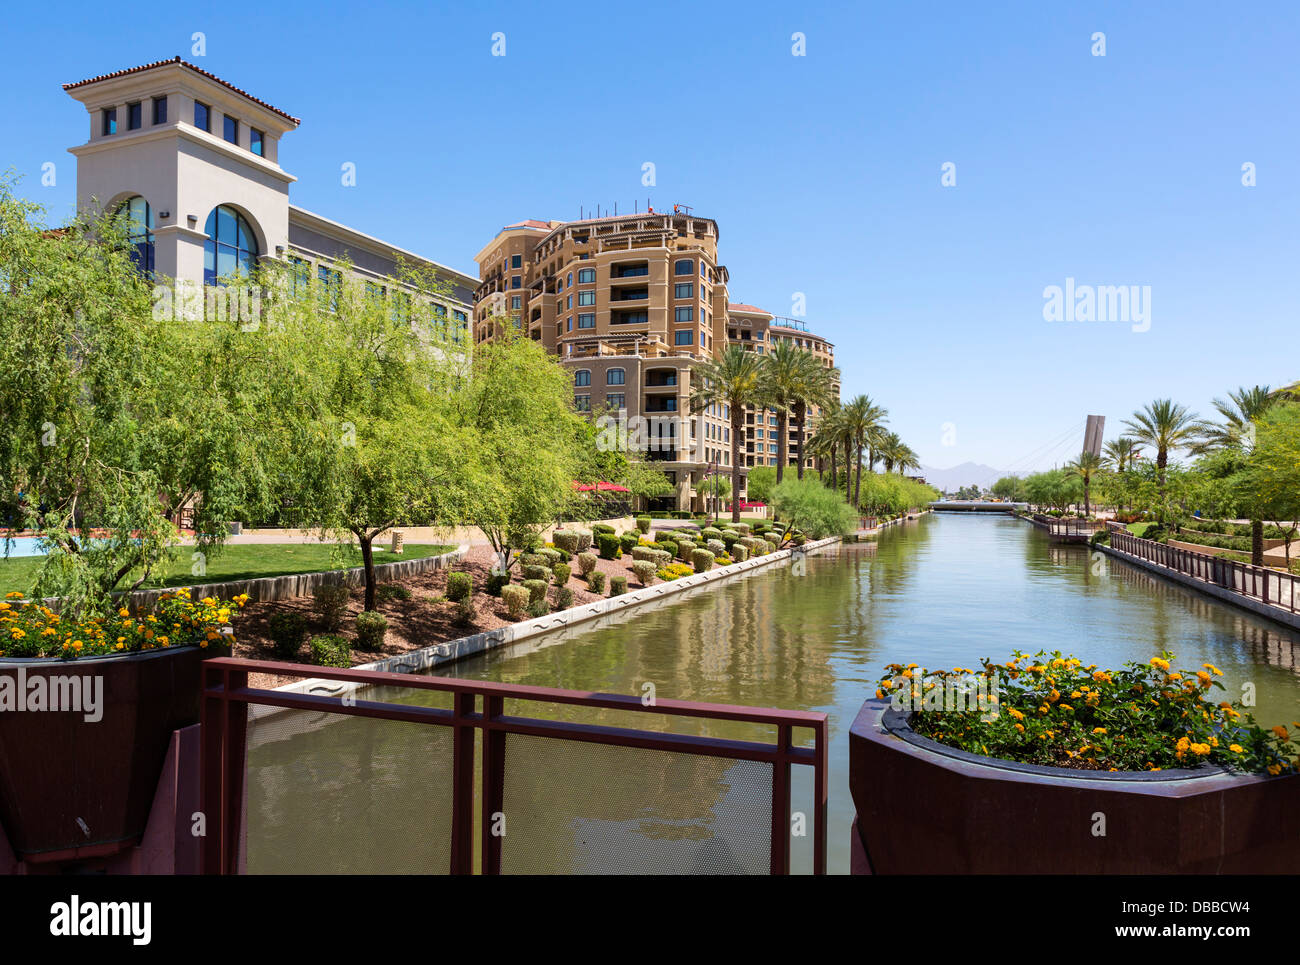 Arizona Canal dans le quartier de front de mer, Scottsdale, Arizona, USA Banque D'Images